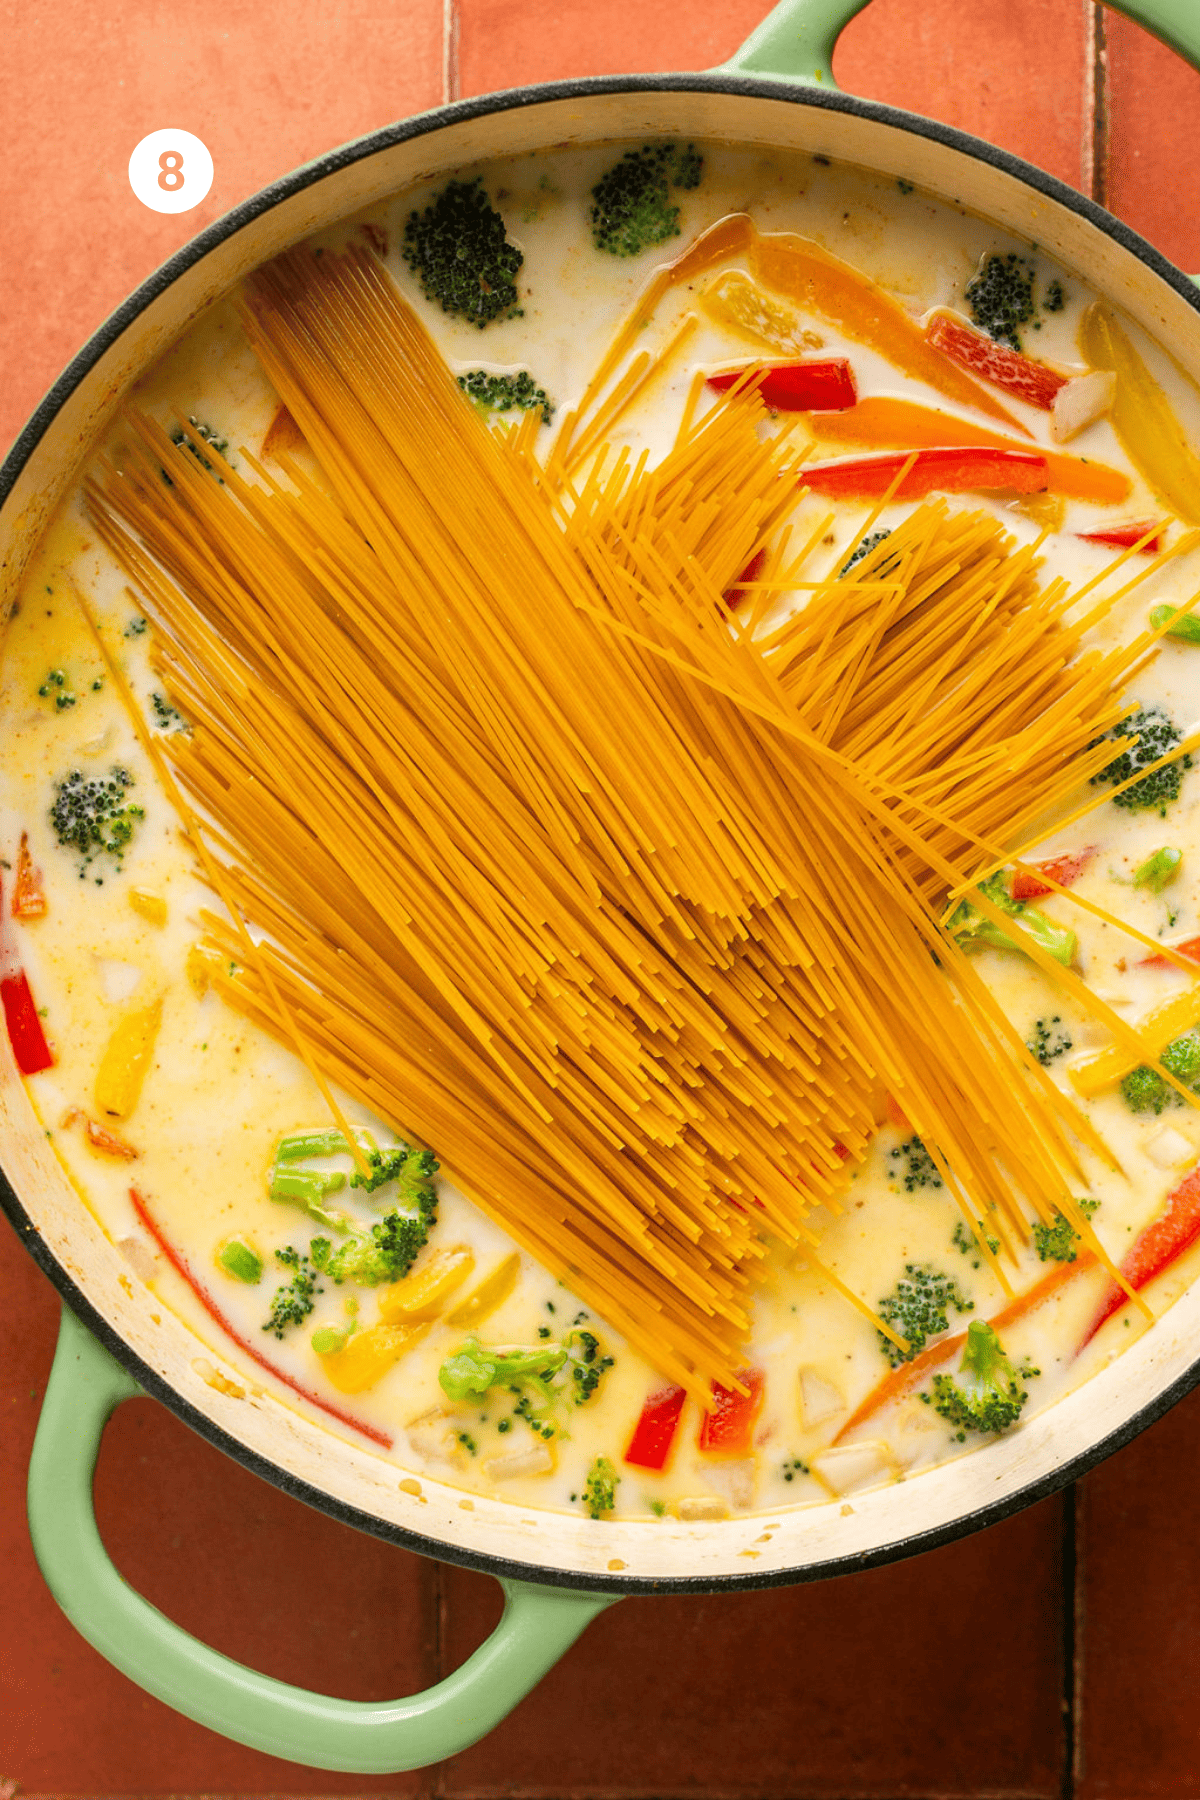 Broken spaghetti noodles added on top in a crisscross pattern.